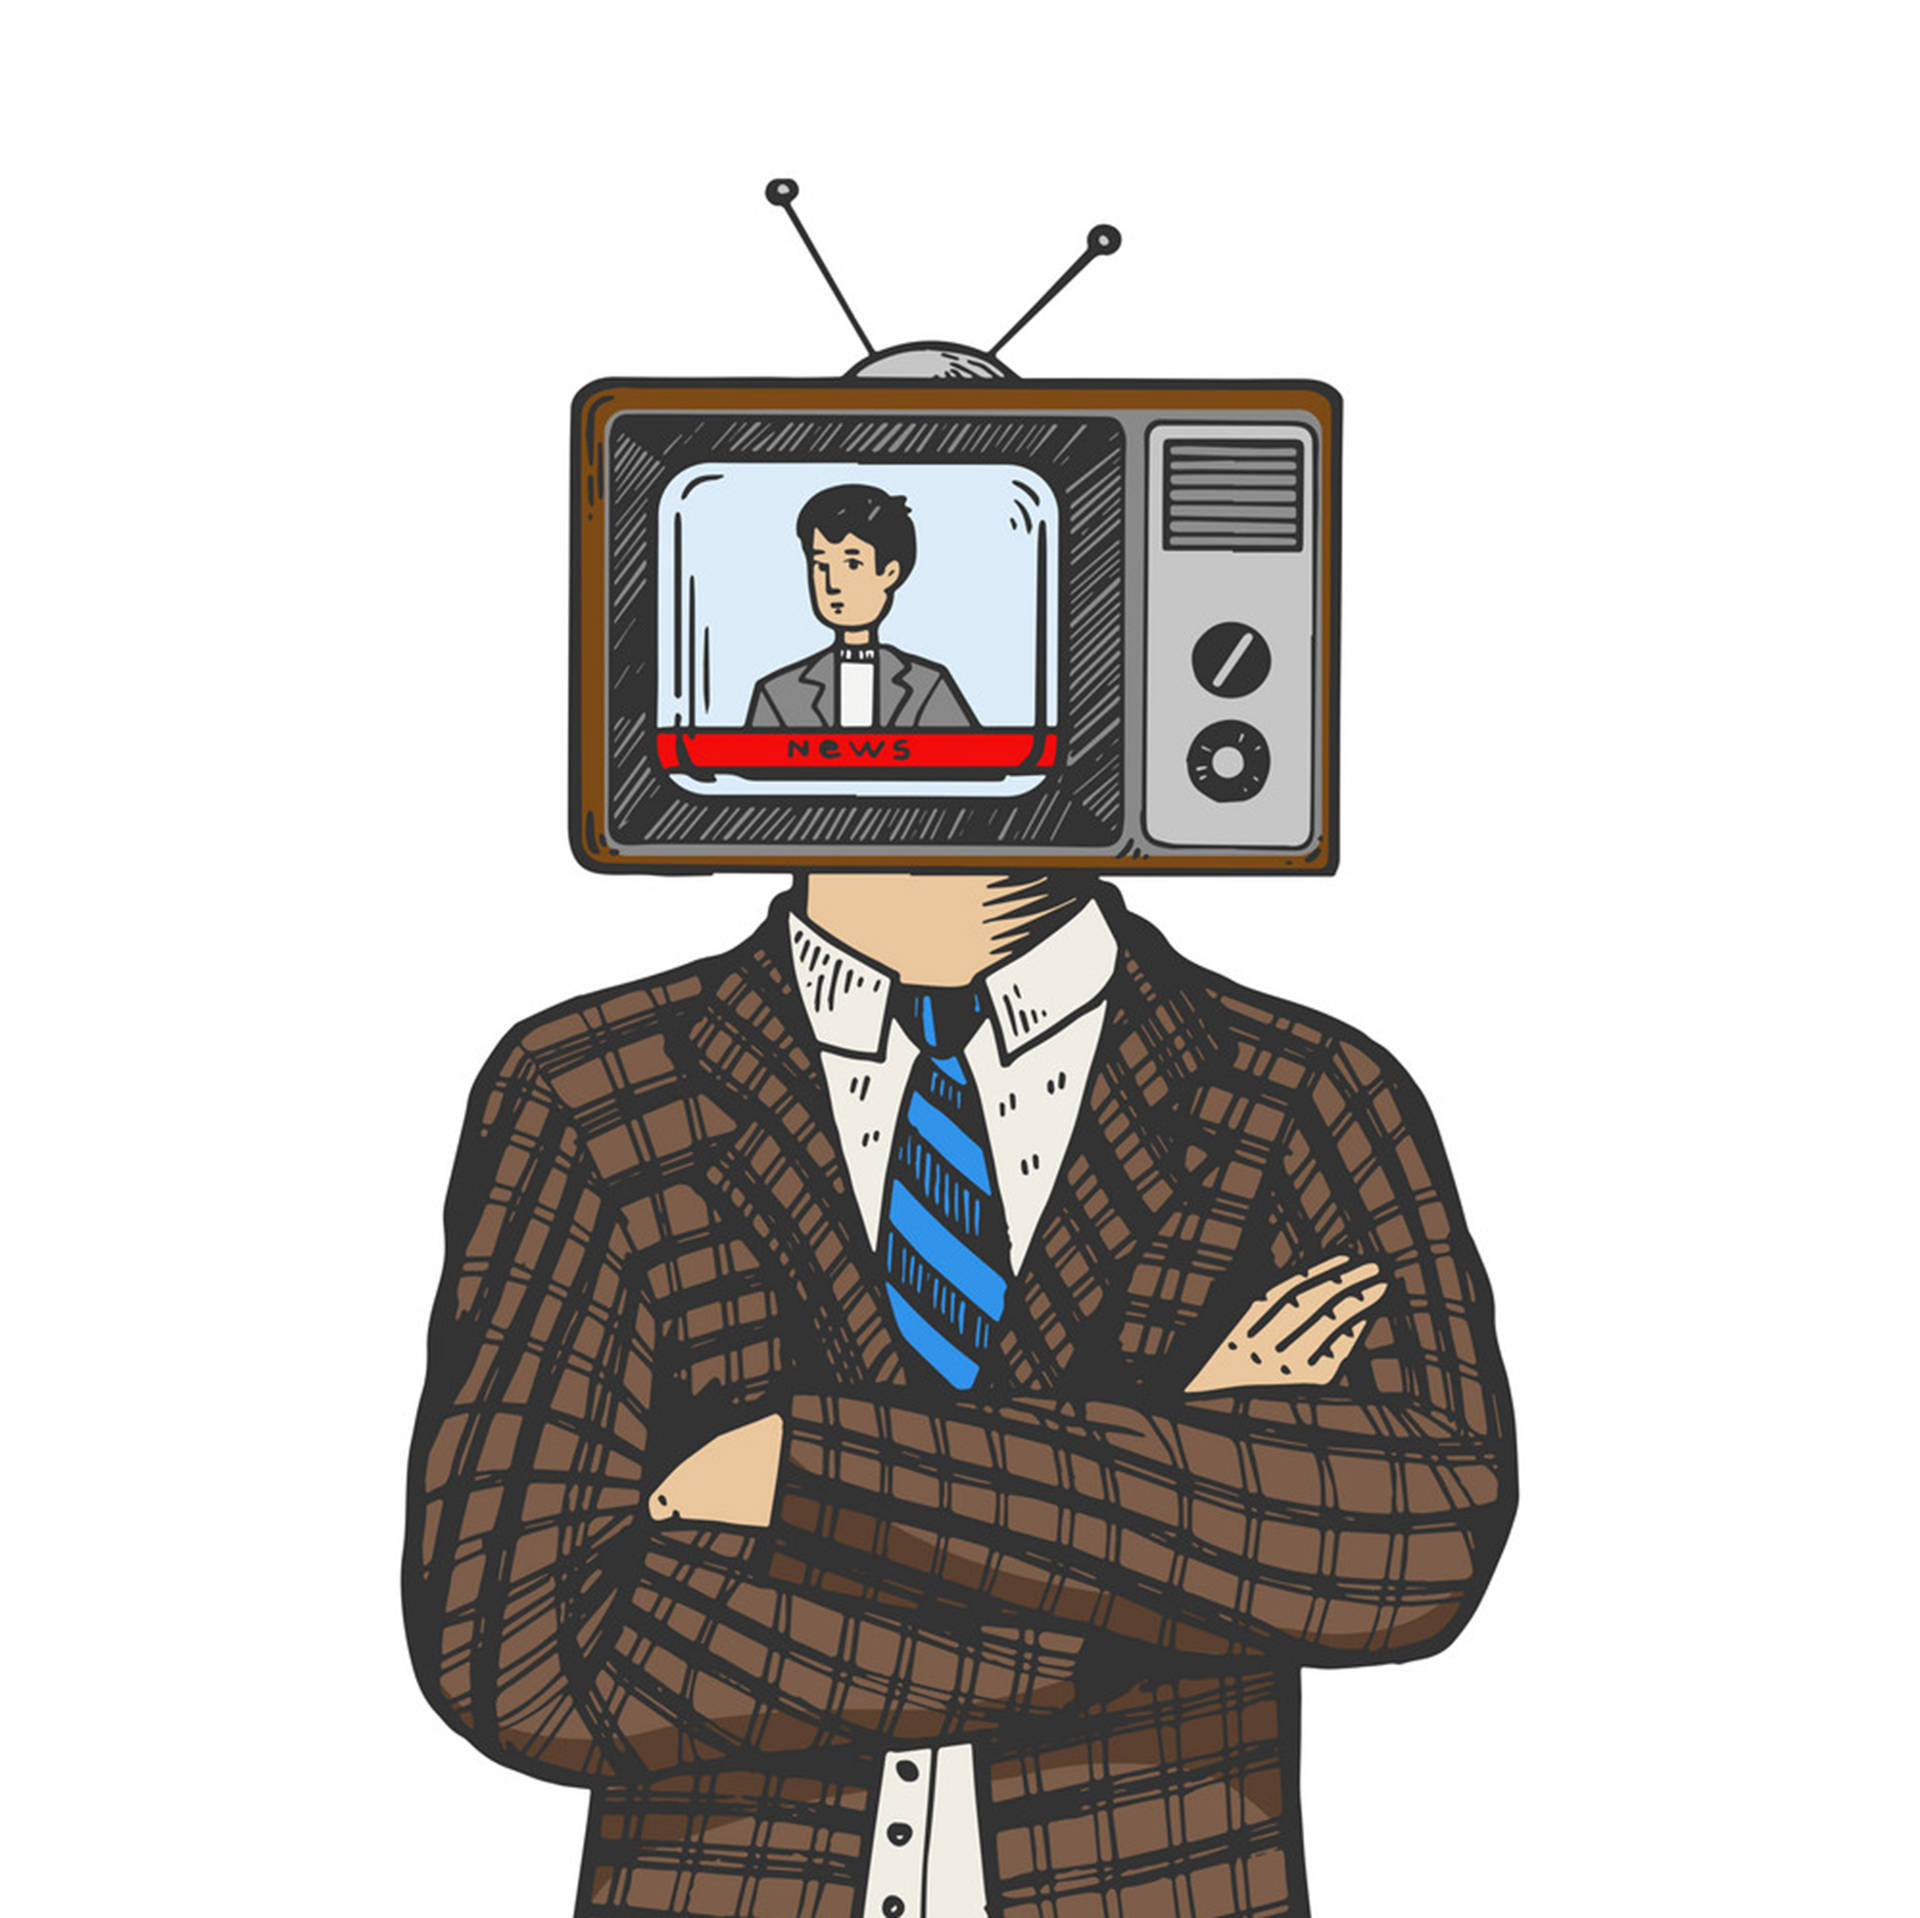 Tv man 18. Телевизор вместо головы. Человек с головой телевизора. Человек с головой телевизора арт. Чел с телевизором на голове.